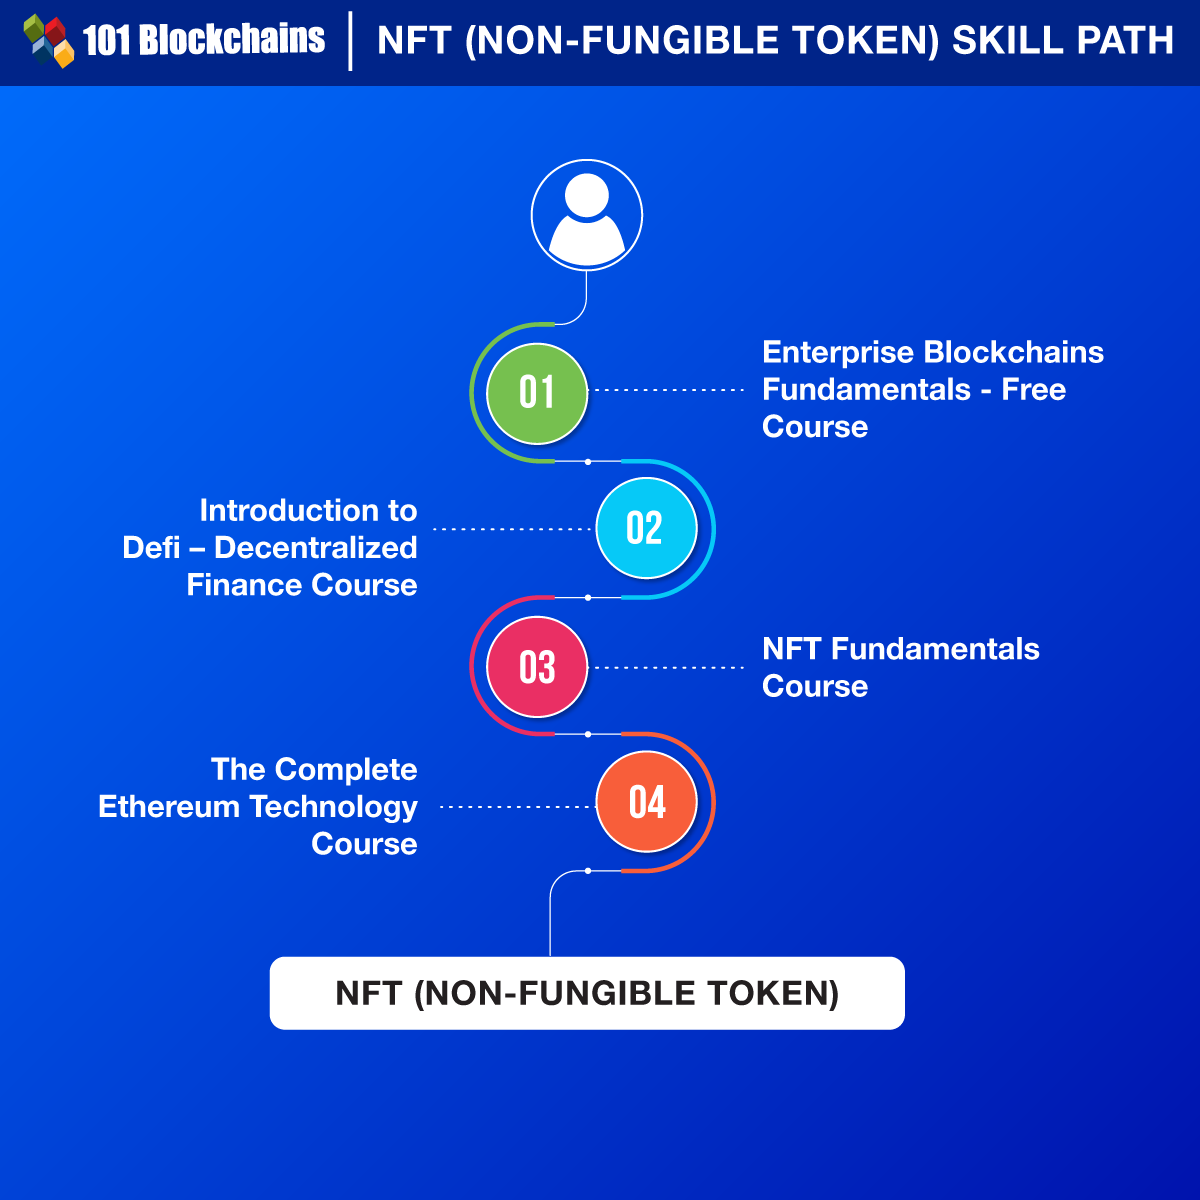 NFT (Non-Fungible Token) Skill Path